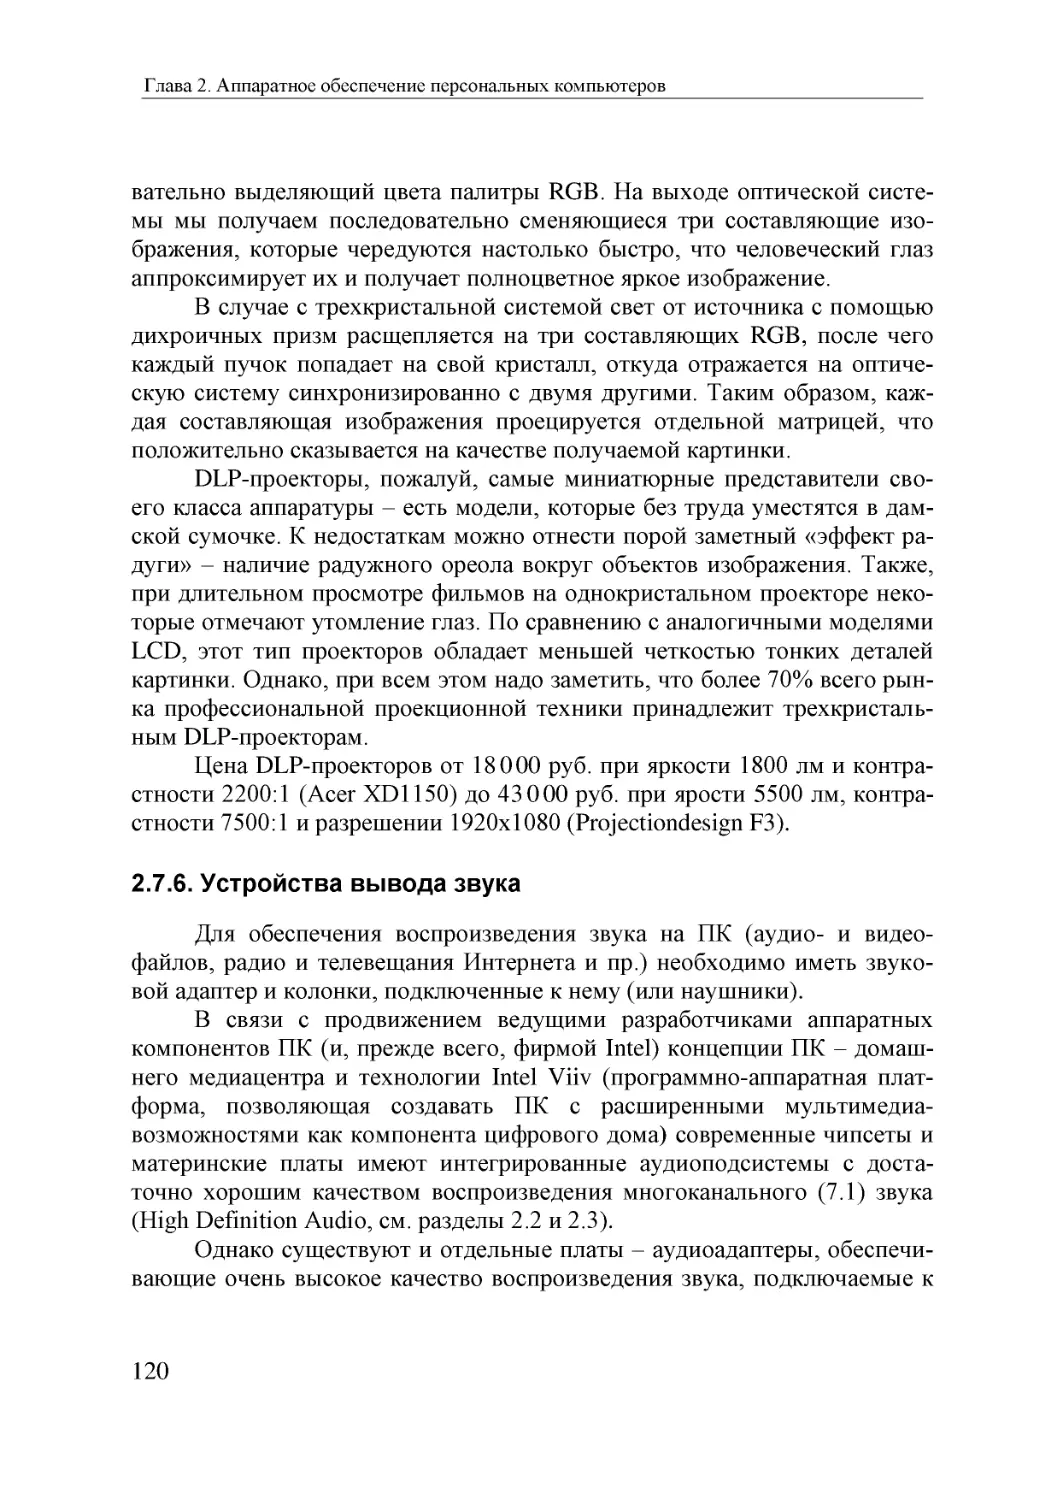 Informatika_Uchebnik_dlya_vuzov_2010 120